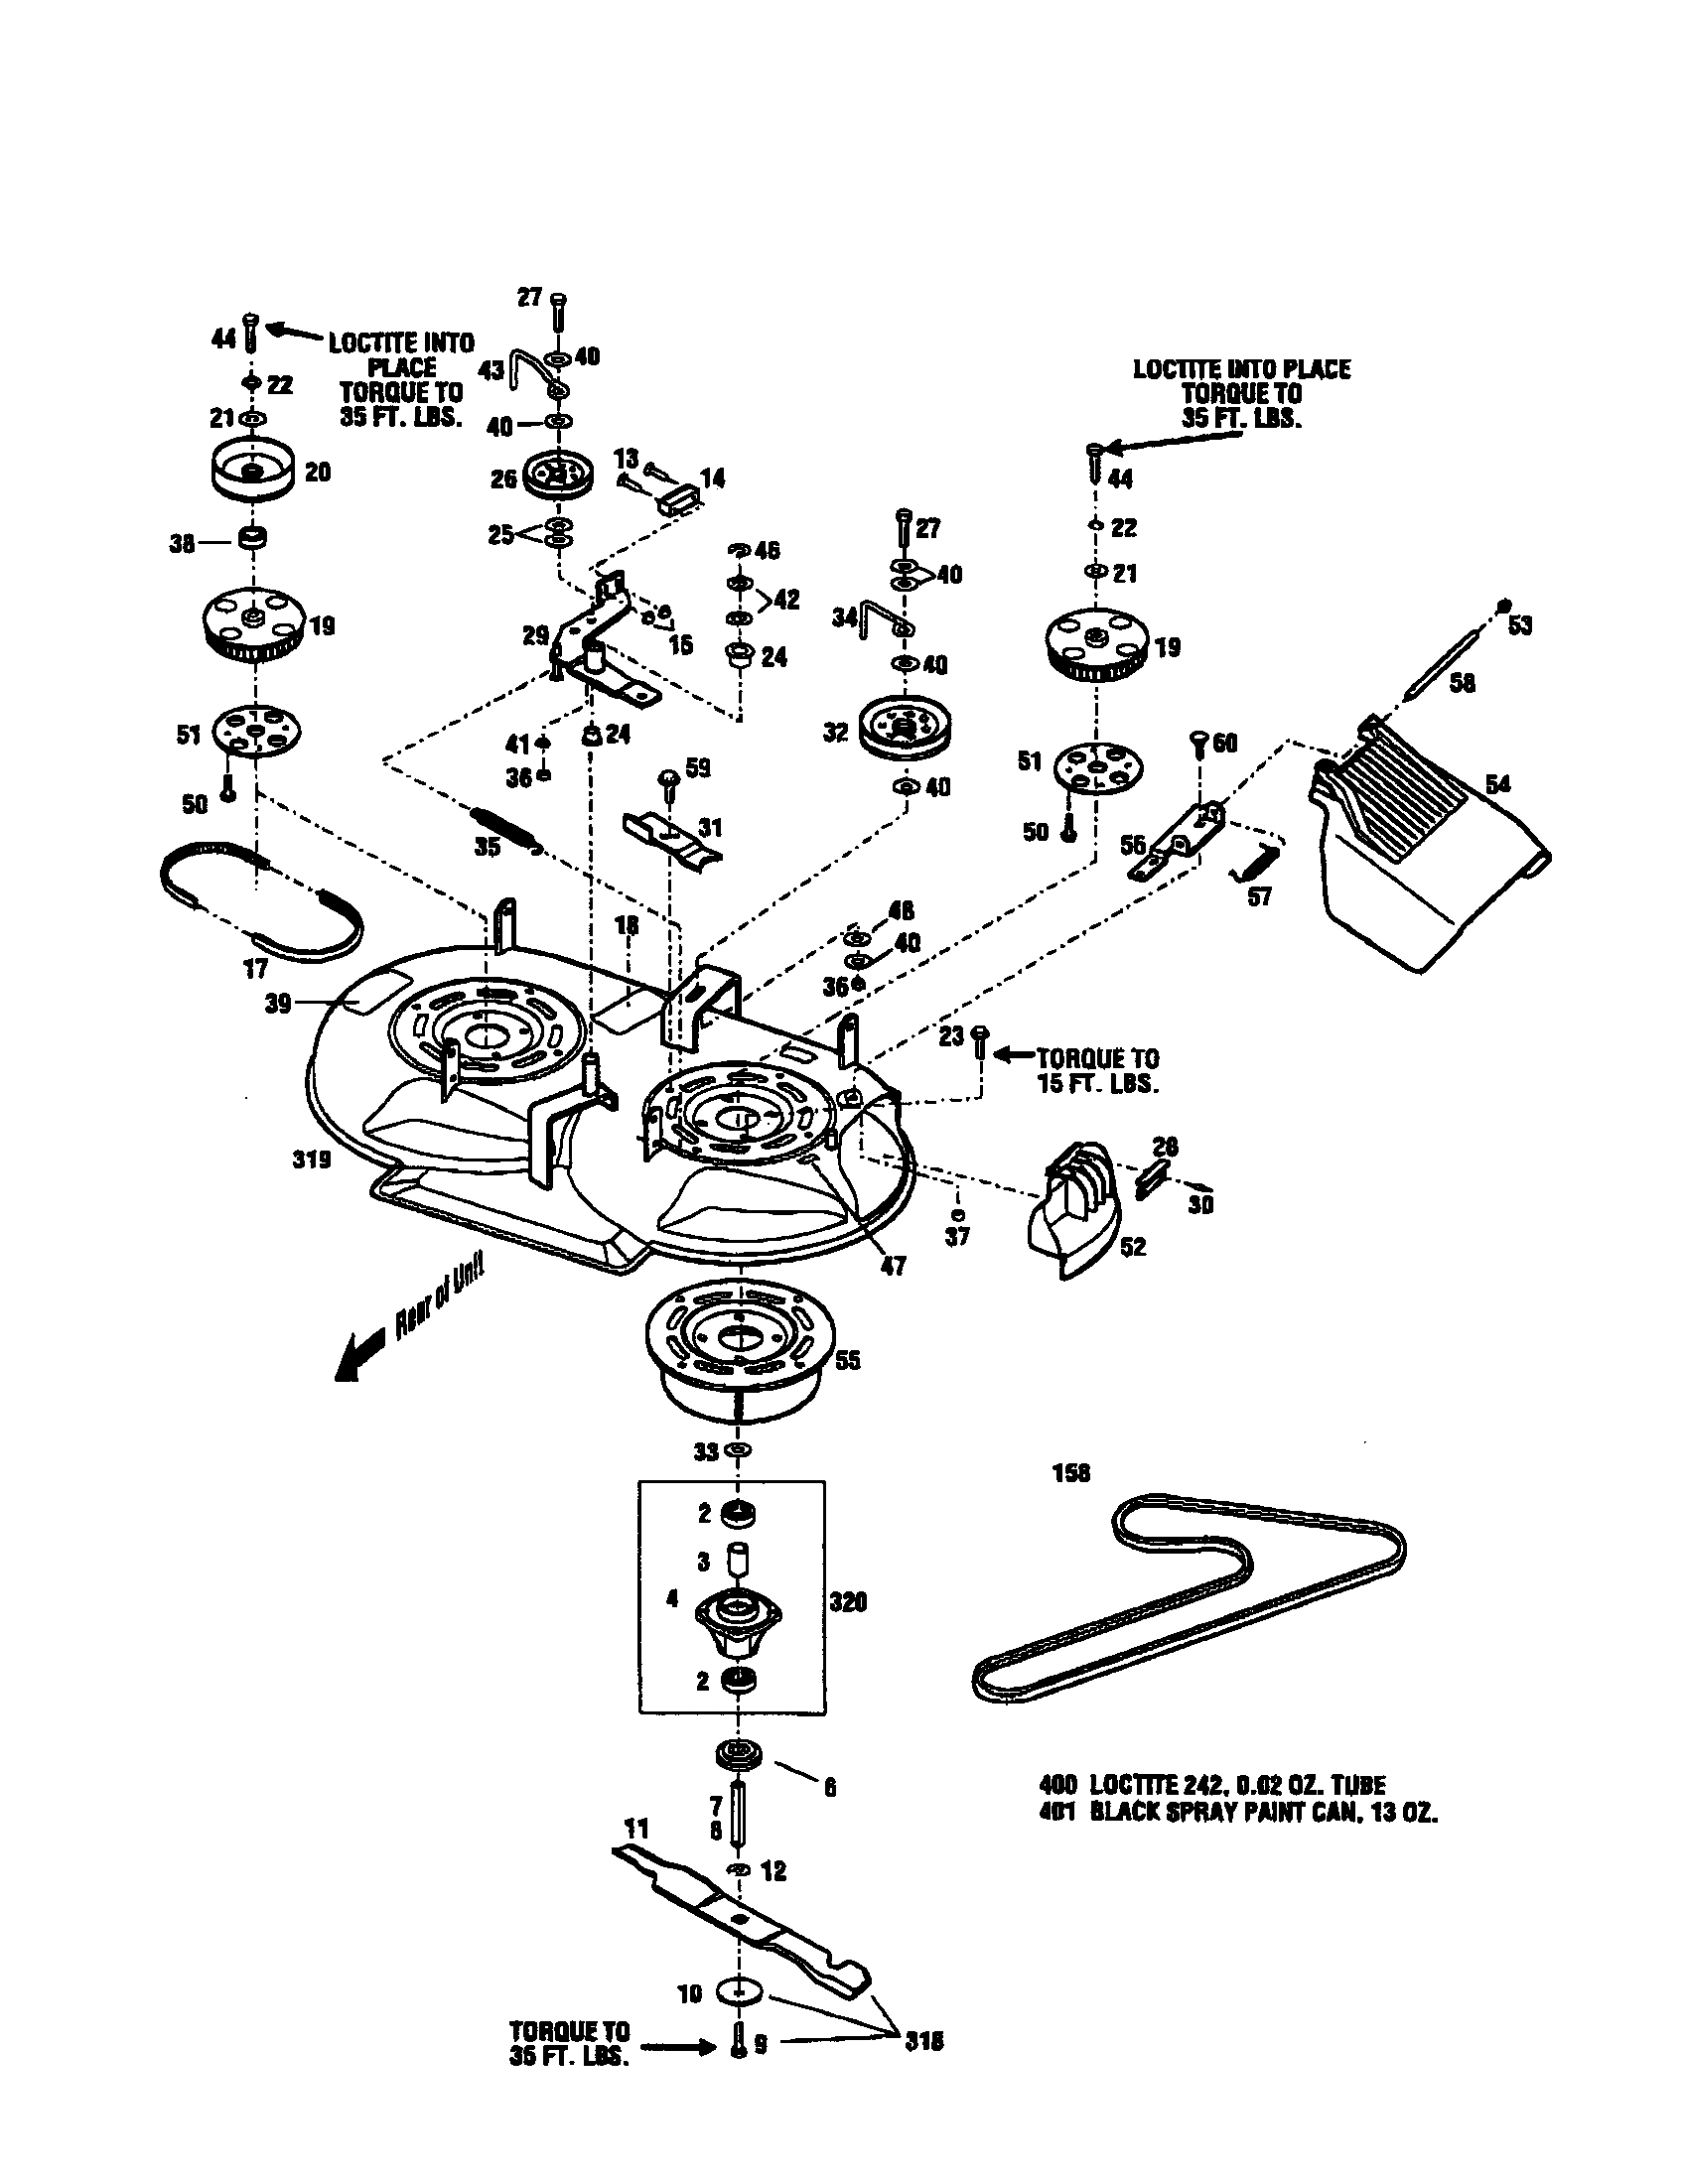 Wiring Database 2020: 30 Craftsman Riding Lawn Mower Drive Belt Diagram